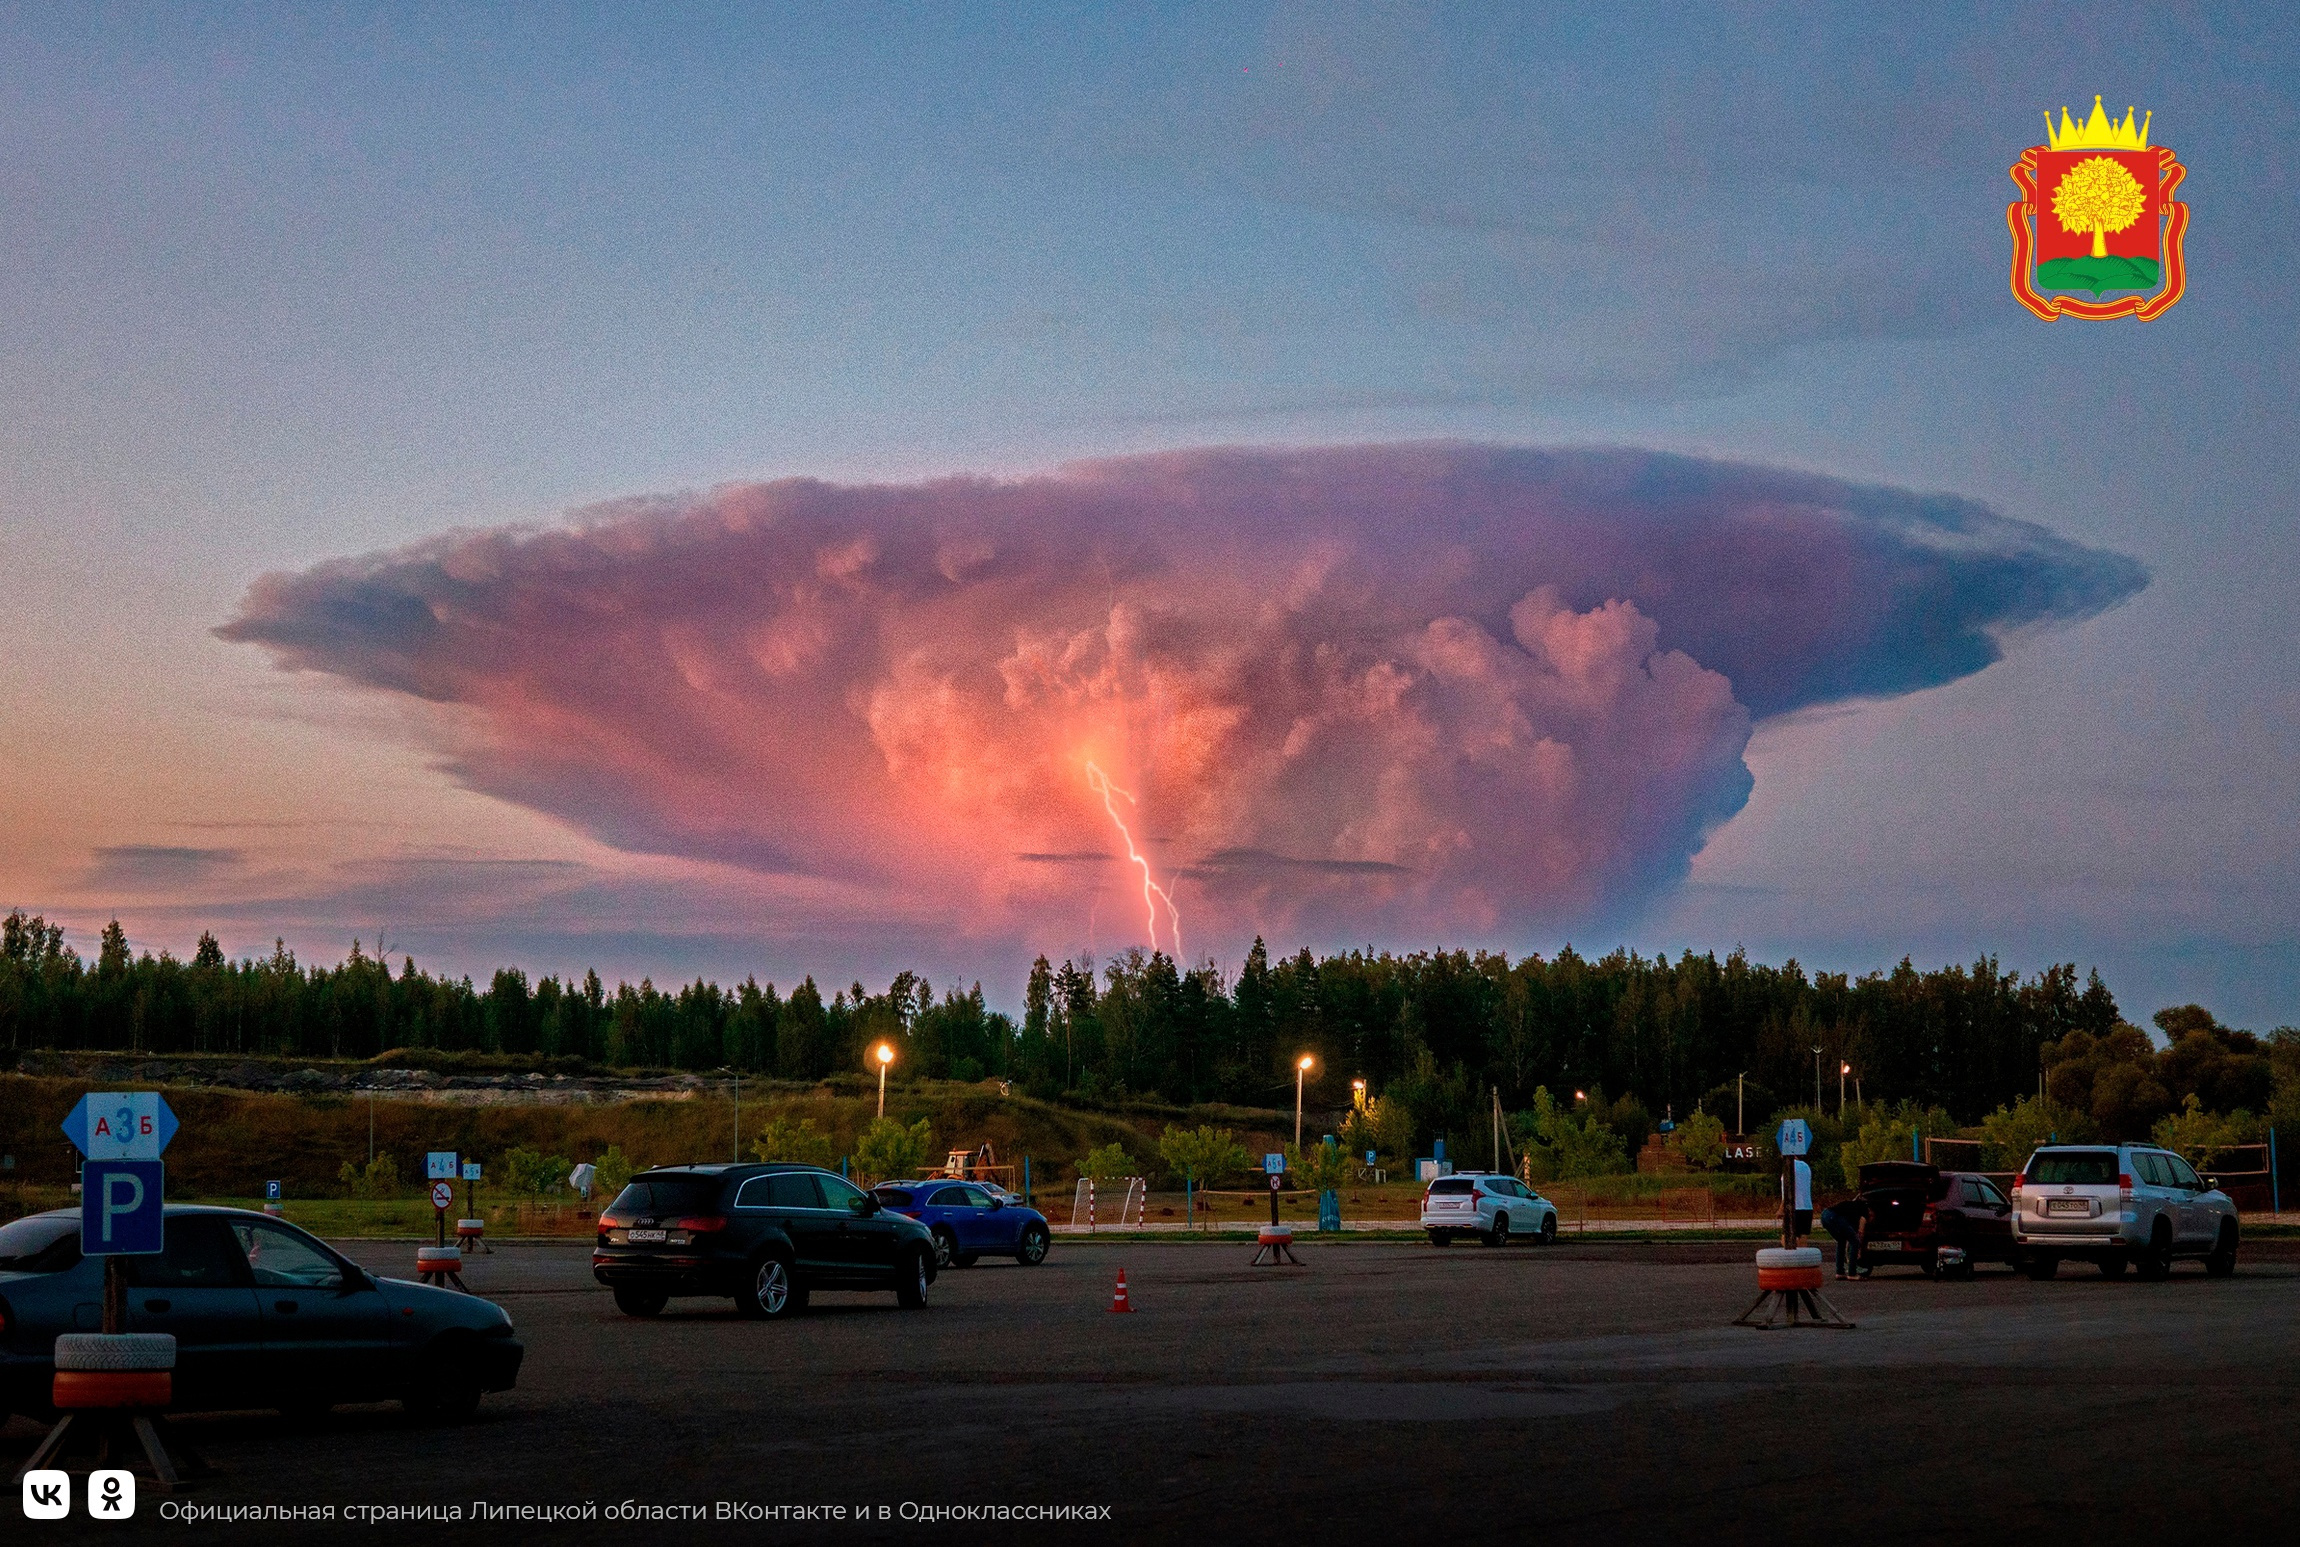 Страшное облако, похожее на ядерный гриб, заходит в разные регионы страны